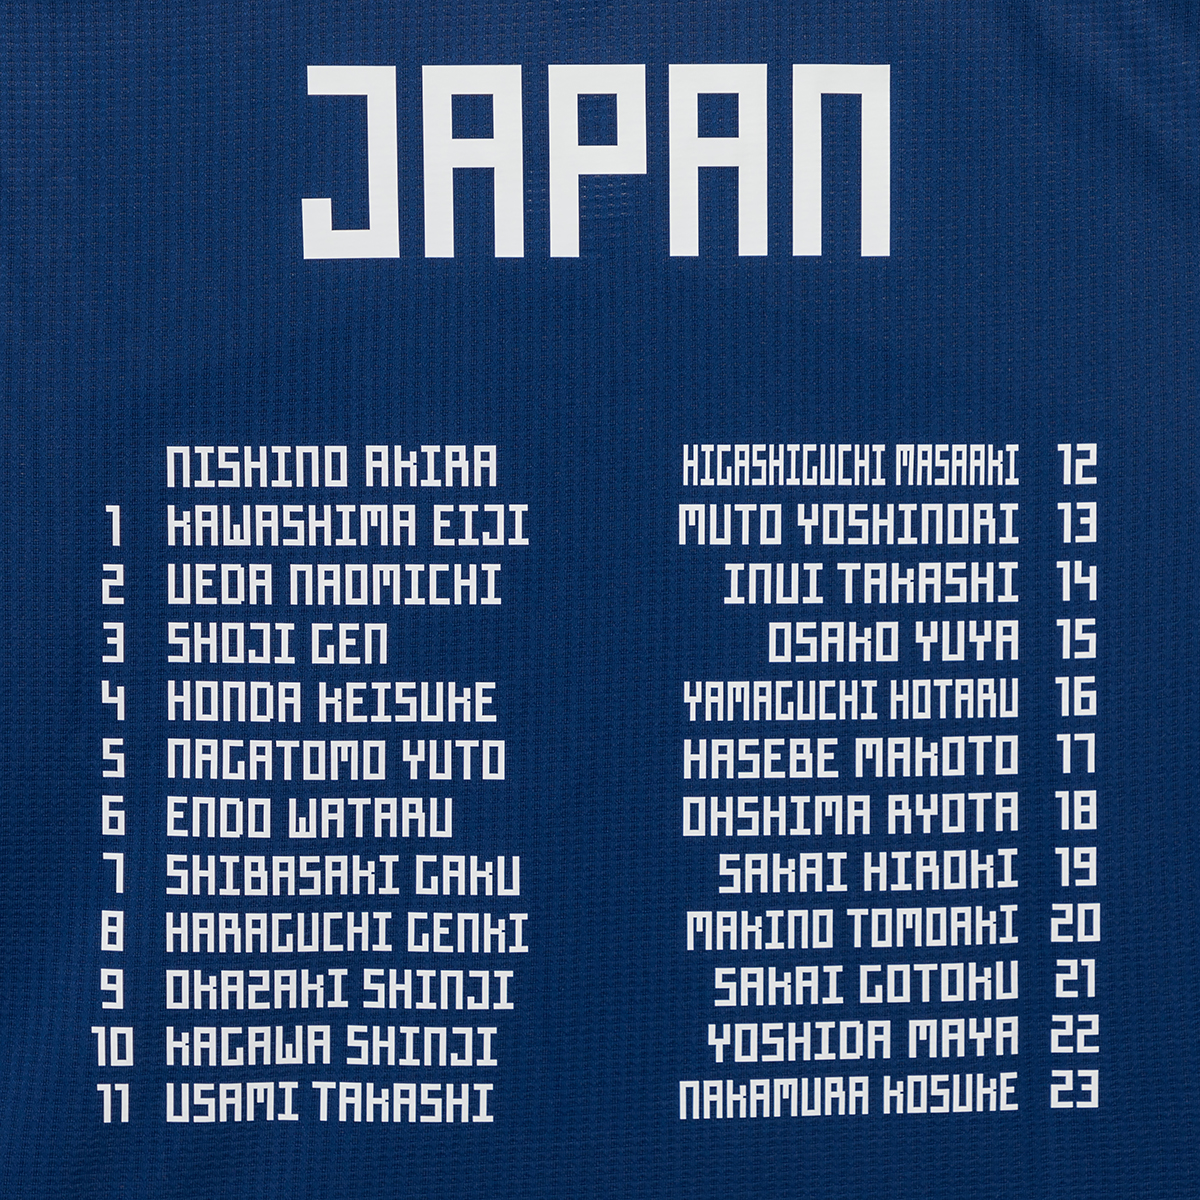 サッカー日本代表の2018 FIFAワールドカップ ロシア™ ベスト16の軌跡を 